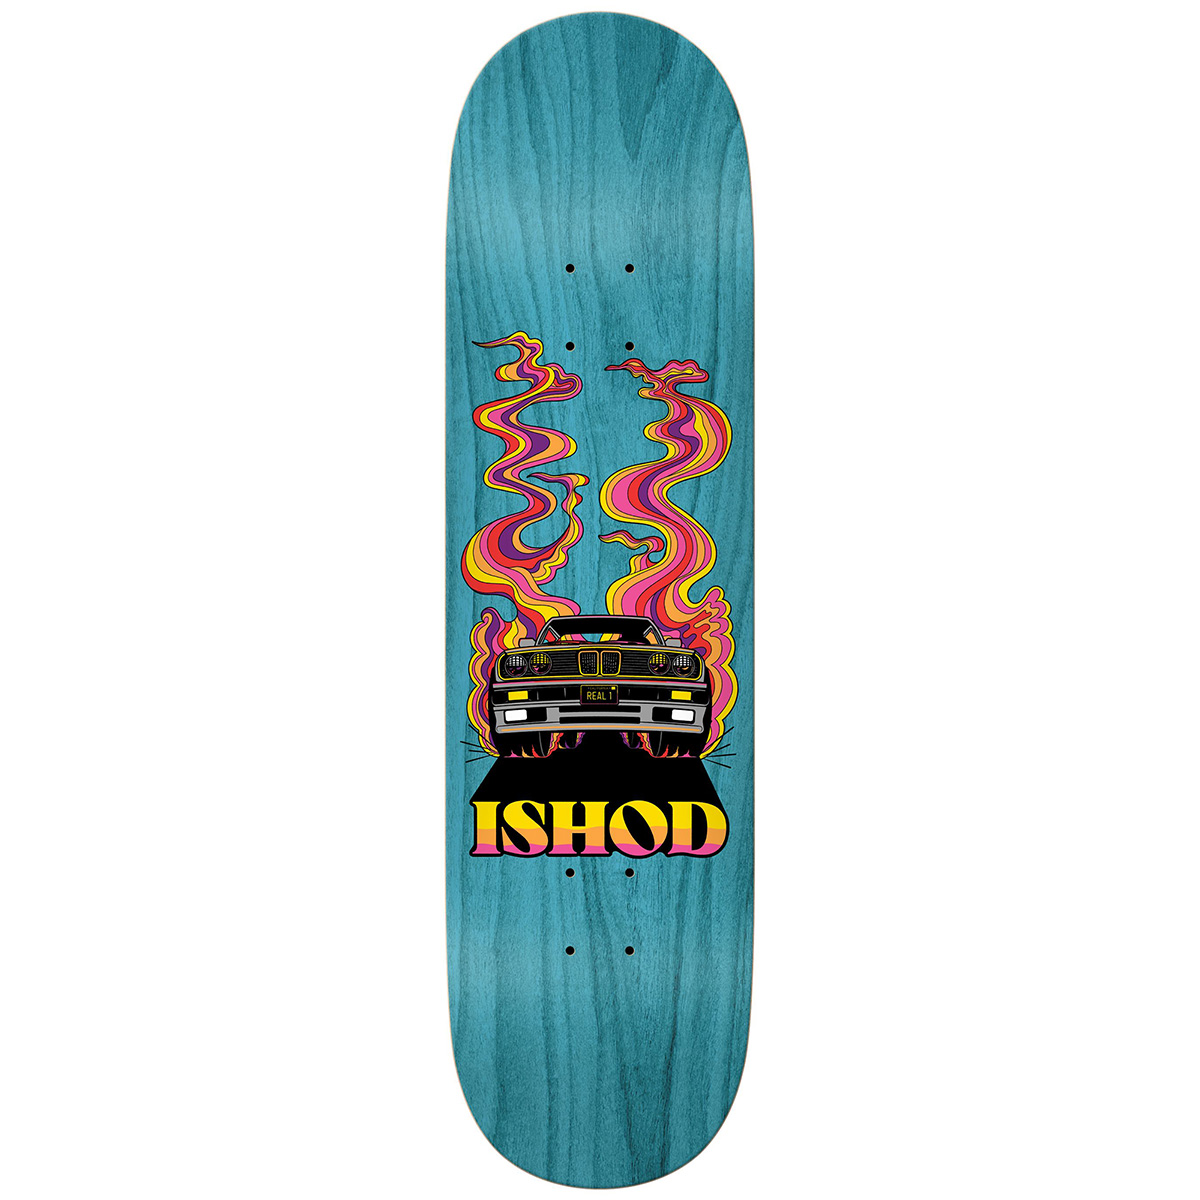 Real Ishod Burnout Skateboard Deck 8.38